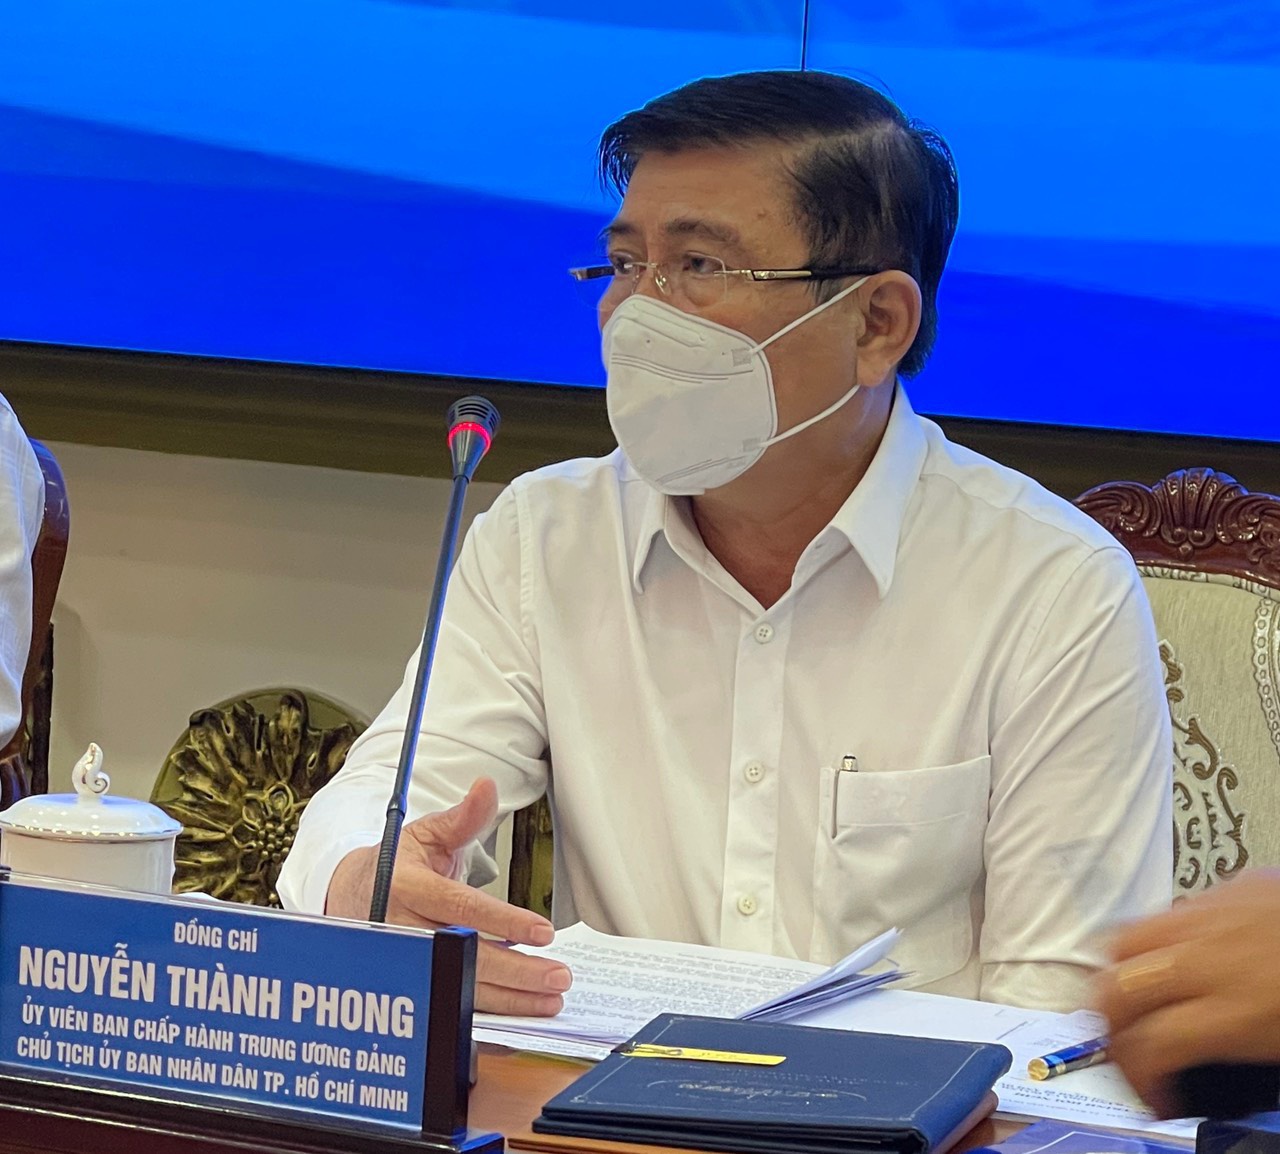 Chủ tịch UBND TPHCM Nguyễn Thành Phong nhận định kinh tế Thành phố gặp nhiều khó khăn do ảnh hưởng dịch bệnh